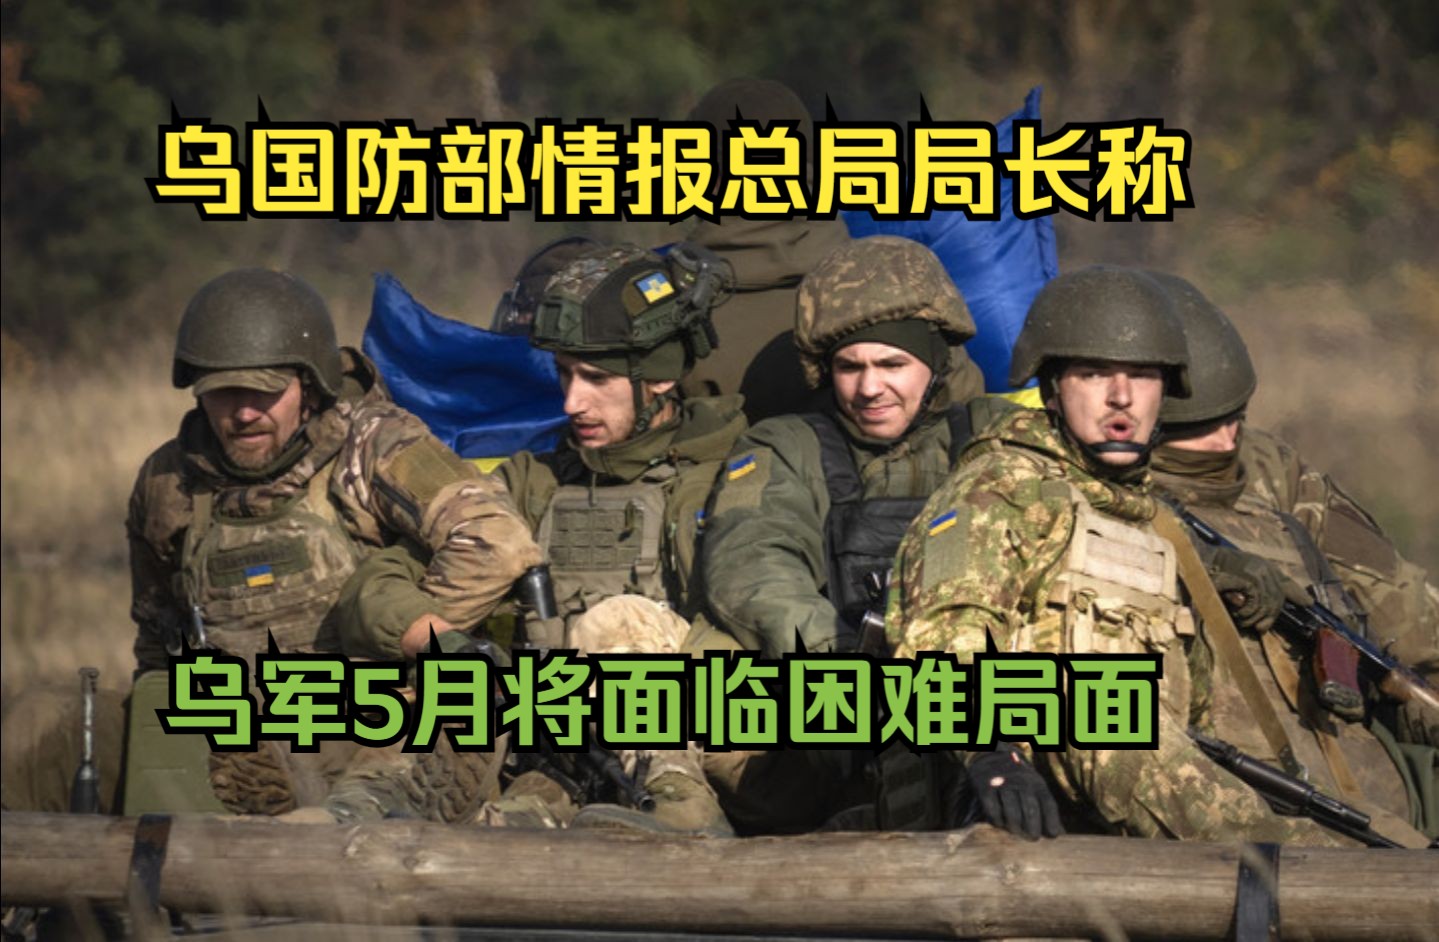 乌国防部情报总局局长称乌军5月将面临困难局面